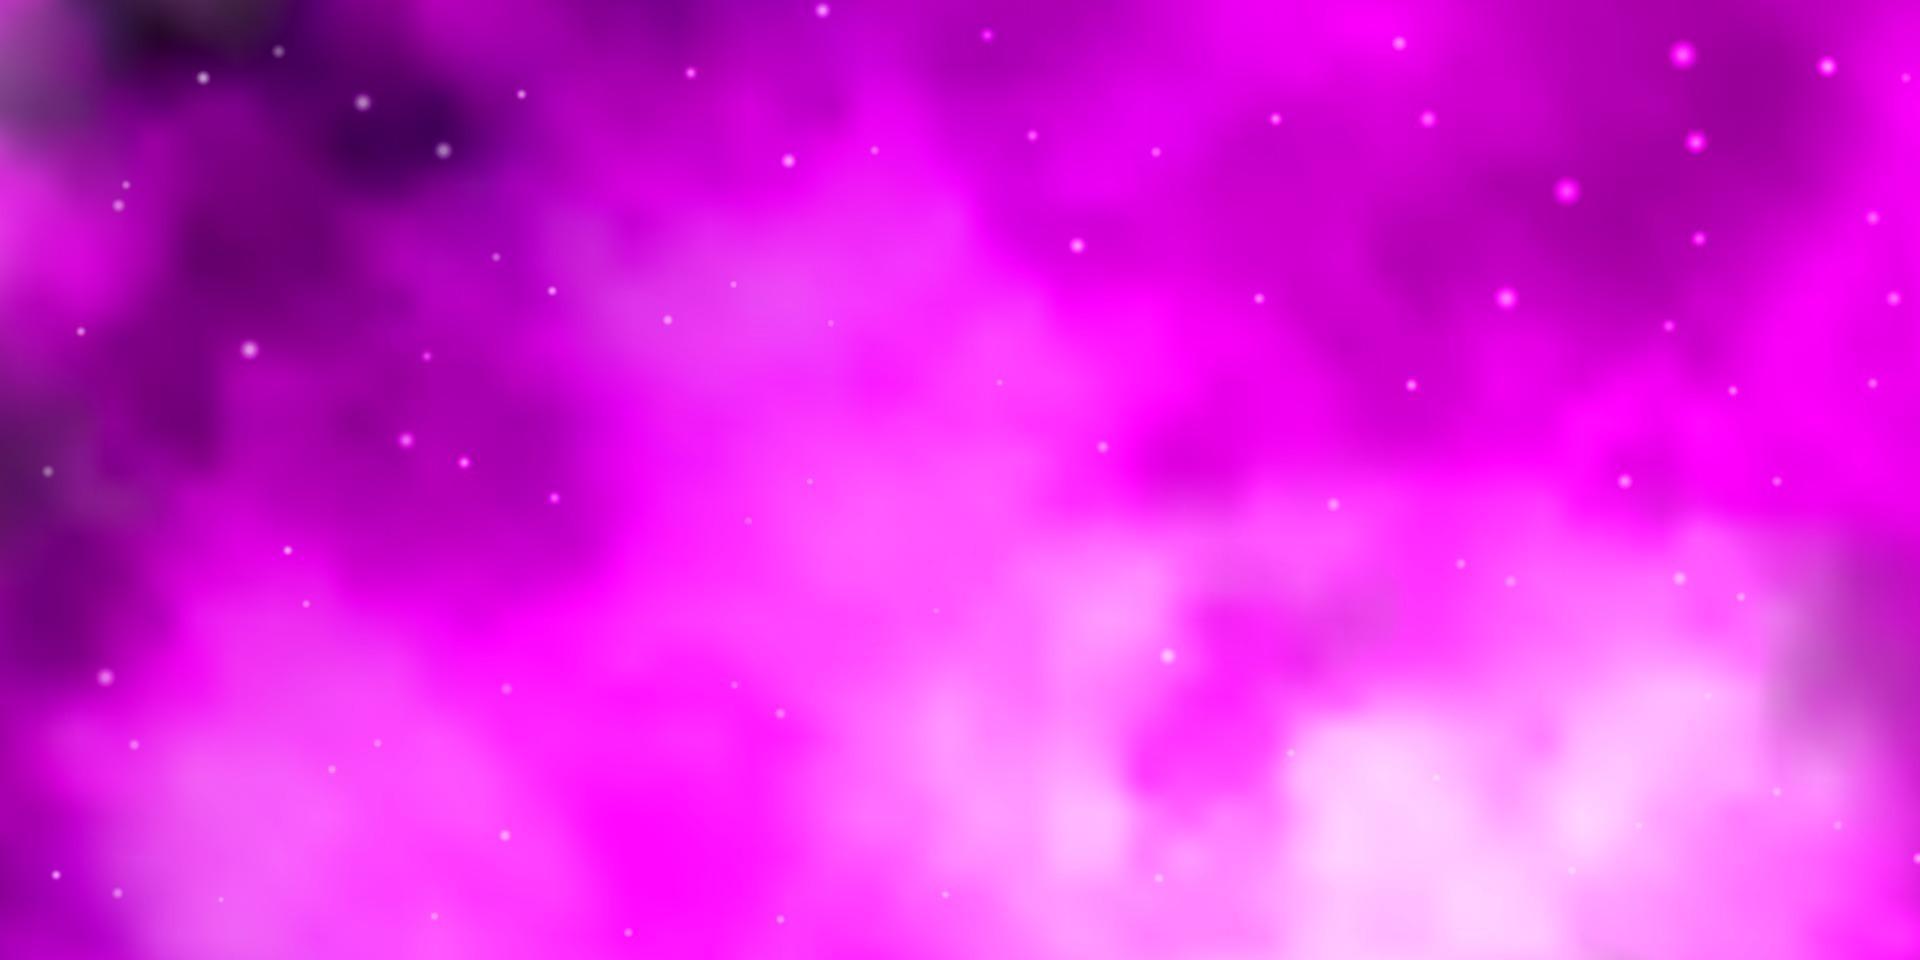 trama vettoriale rosa chiaro con bellissime stelle.